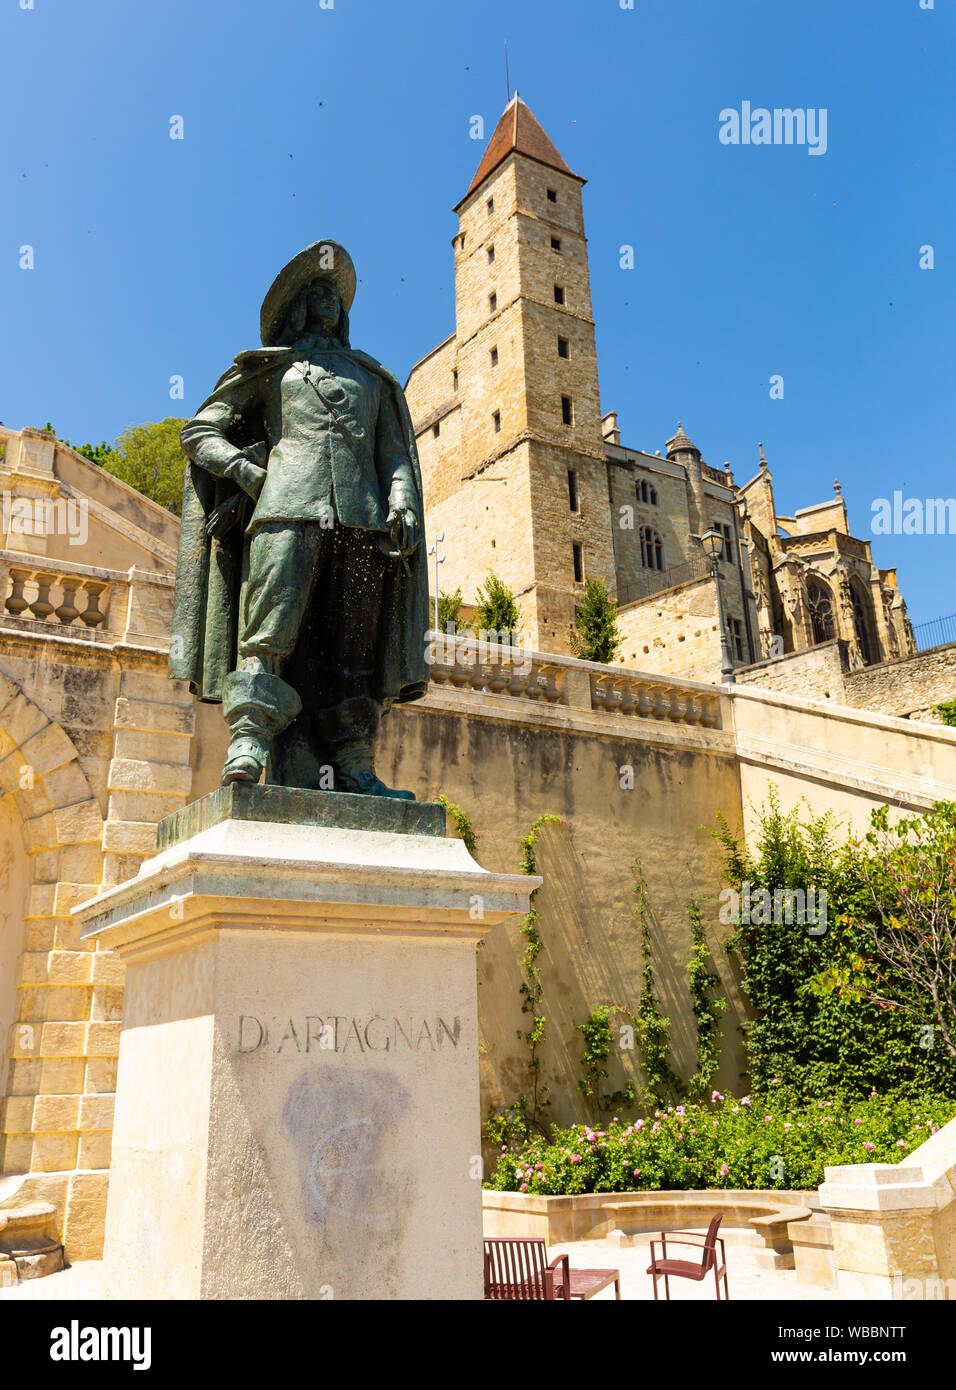 Blick auf die Statue von dArtagnan in seinem musketier gekleidet auf den Hintergrund des ehemaligen Gefängnisses alten Turm Armagnac, Albi, Frankreich Stockfoto